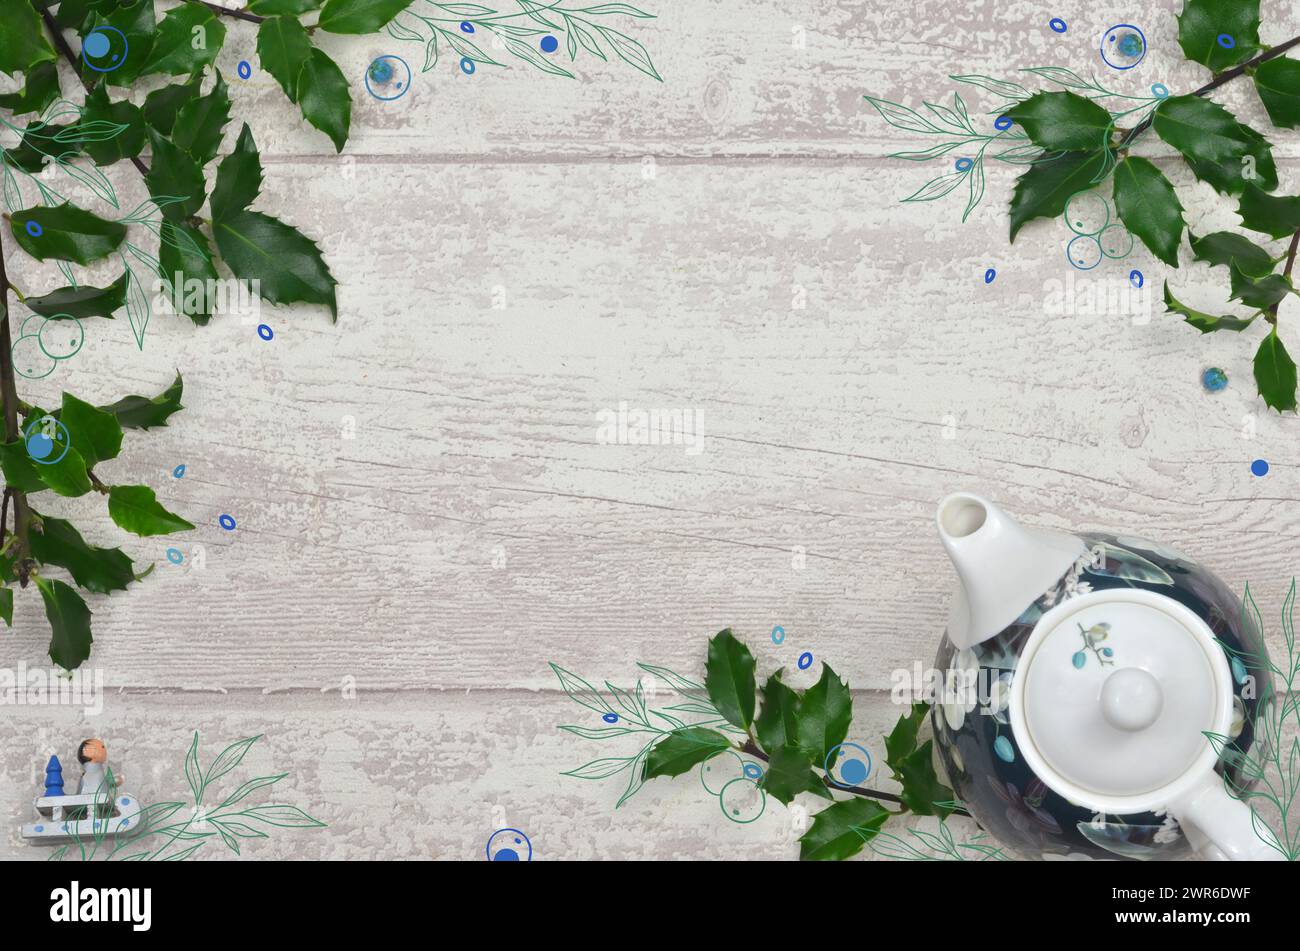 Foto gemischt mit Grafikrahmen mit grünen Blättern, blauer Dekoration, leerer Platz zum Ausfüllen. Stockfoto